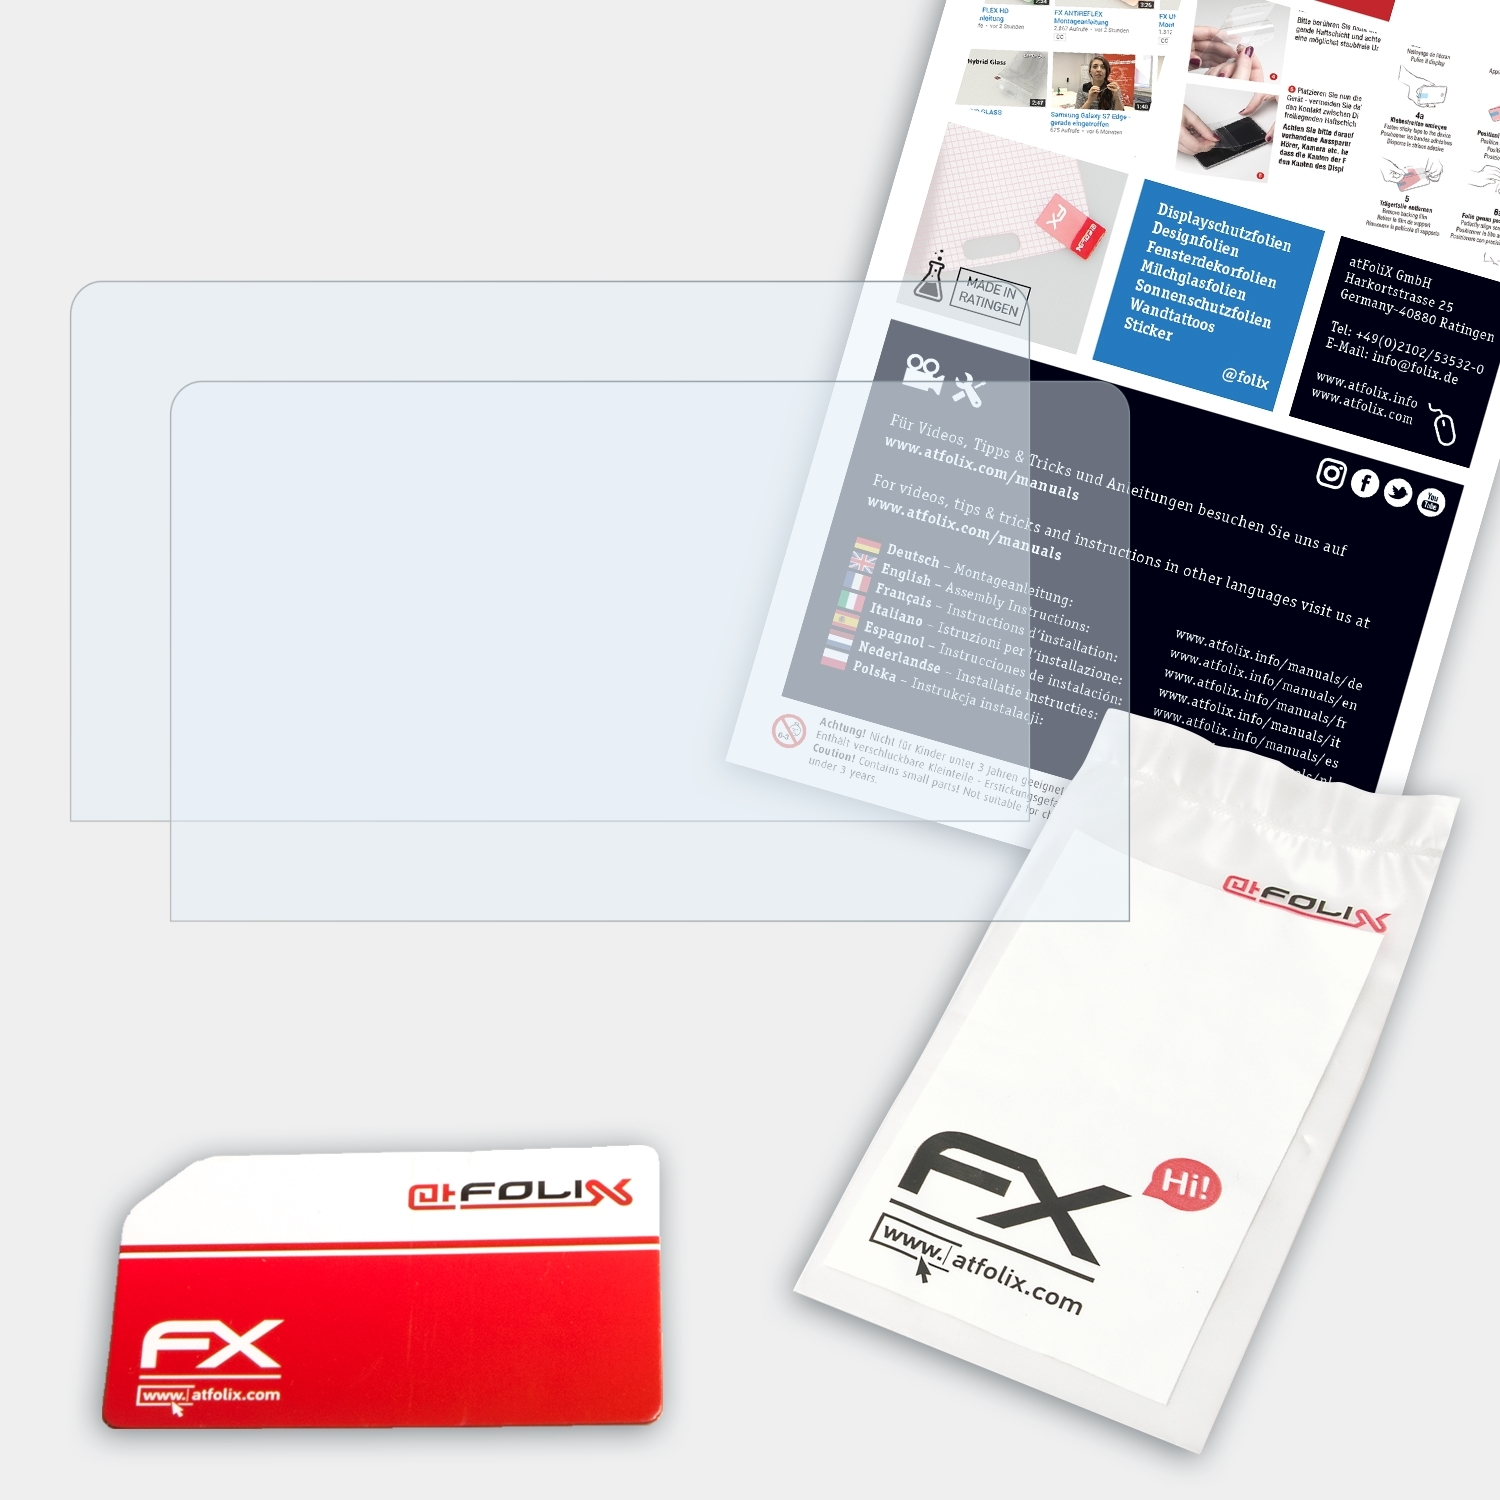 ATFOLIX 2x FX-Clear 2s) Displayschutz(für OneMix One-Netbook